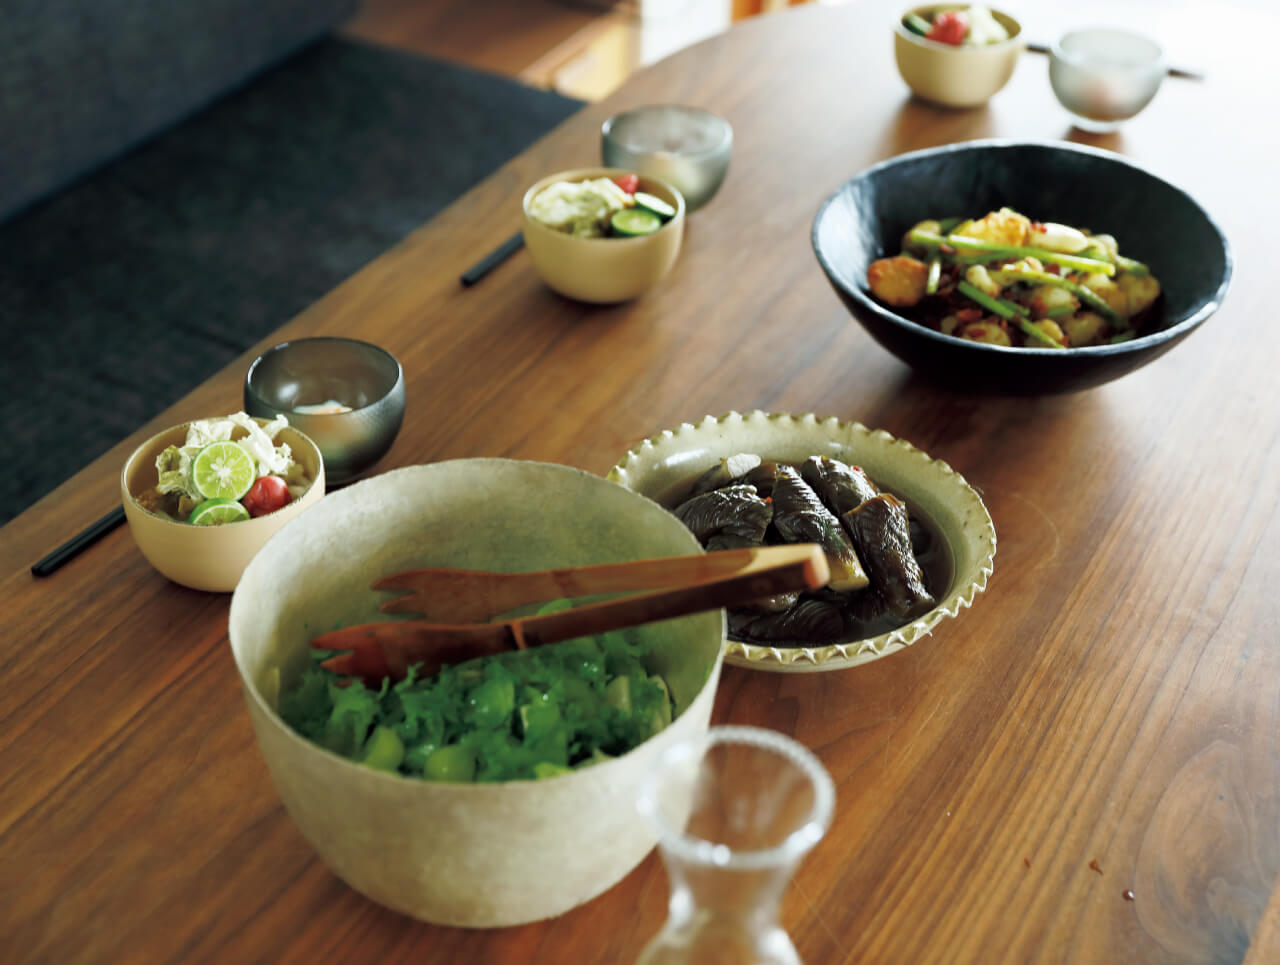 「人をもてなすのが日常」という石村さん。作家ものやアンティークの器を自在に組み合わせ、手慣れた雰囲気で手料理をふるまう。駆けつけの一杯、野菜づくしの食事、食後のデザート。豊かな食卓の風景が広がる。